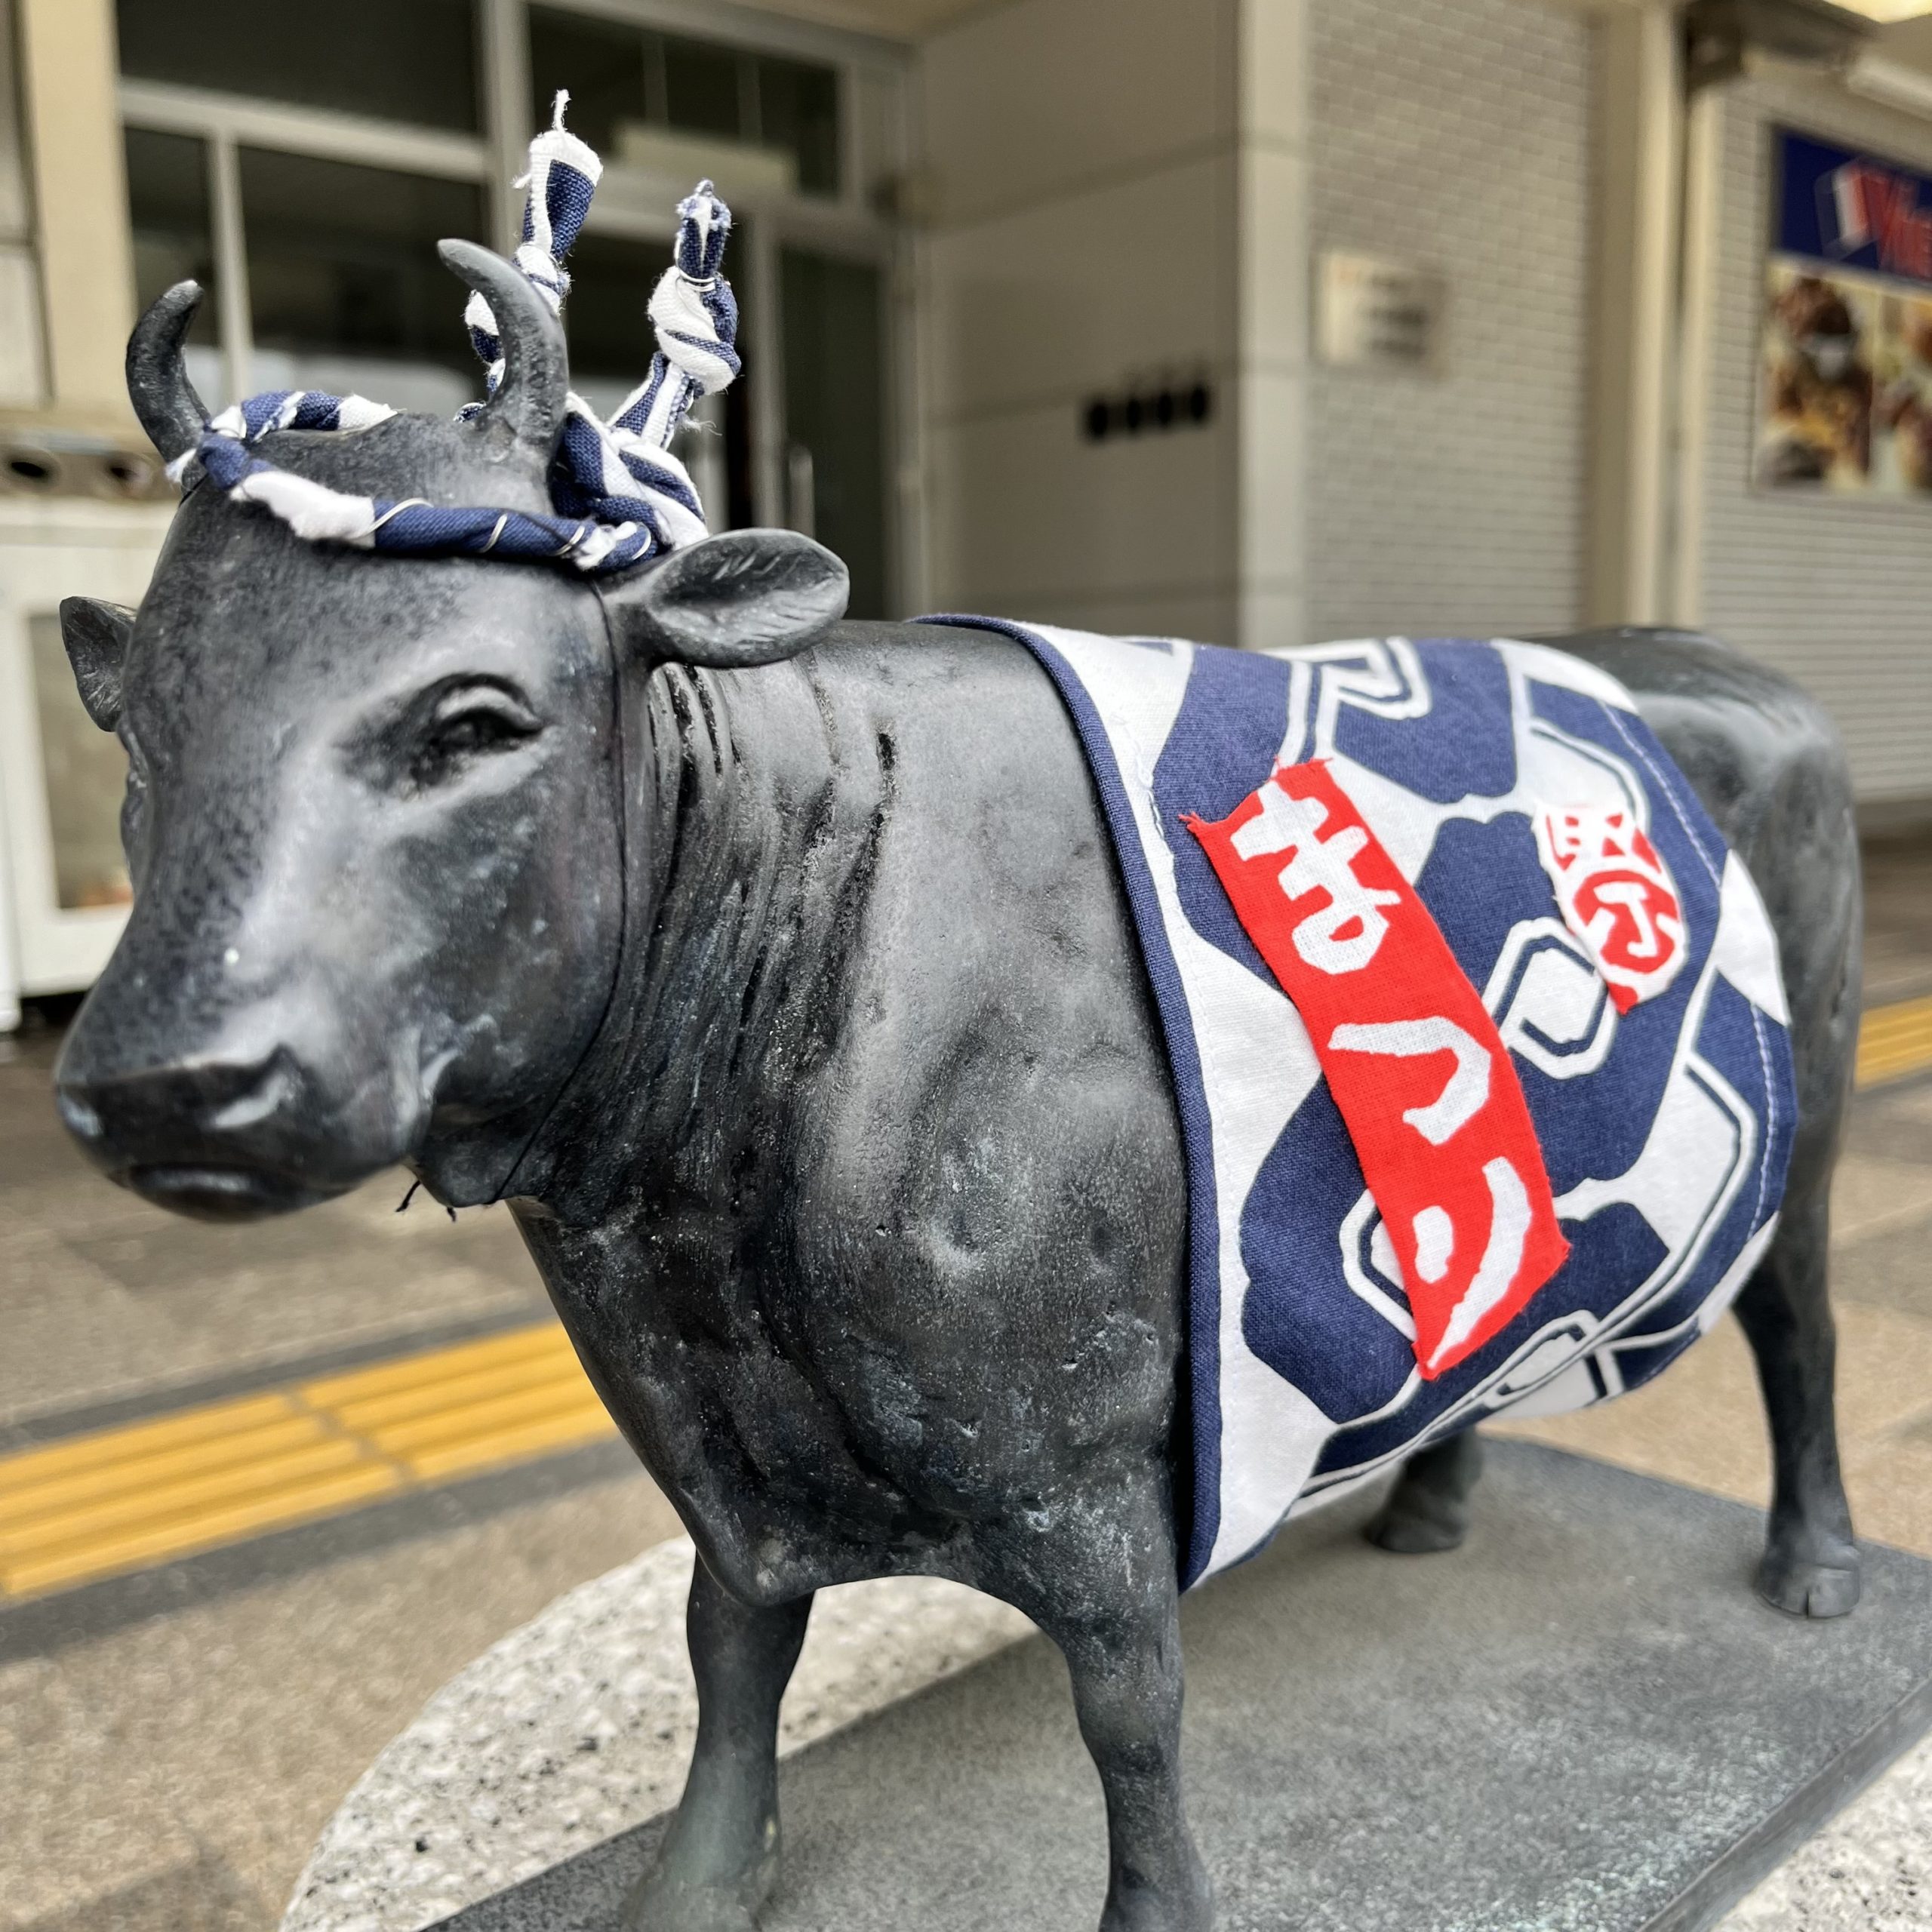 松阪駅前の松阪牛さん「祭り姿」に変身しました